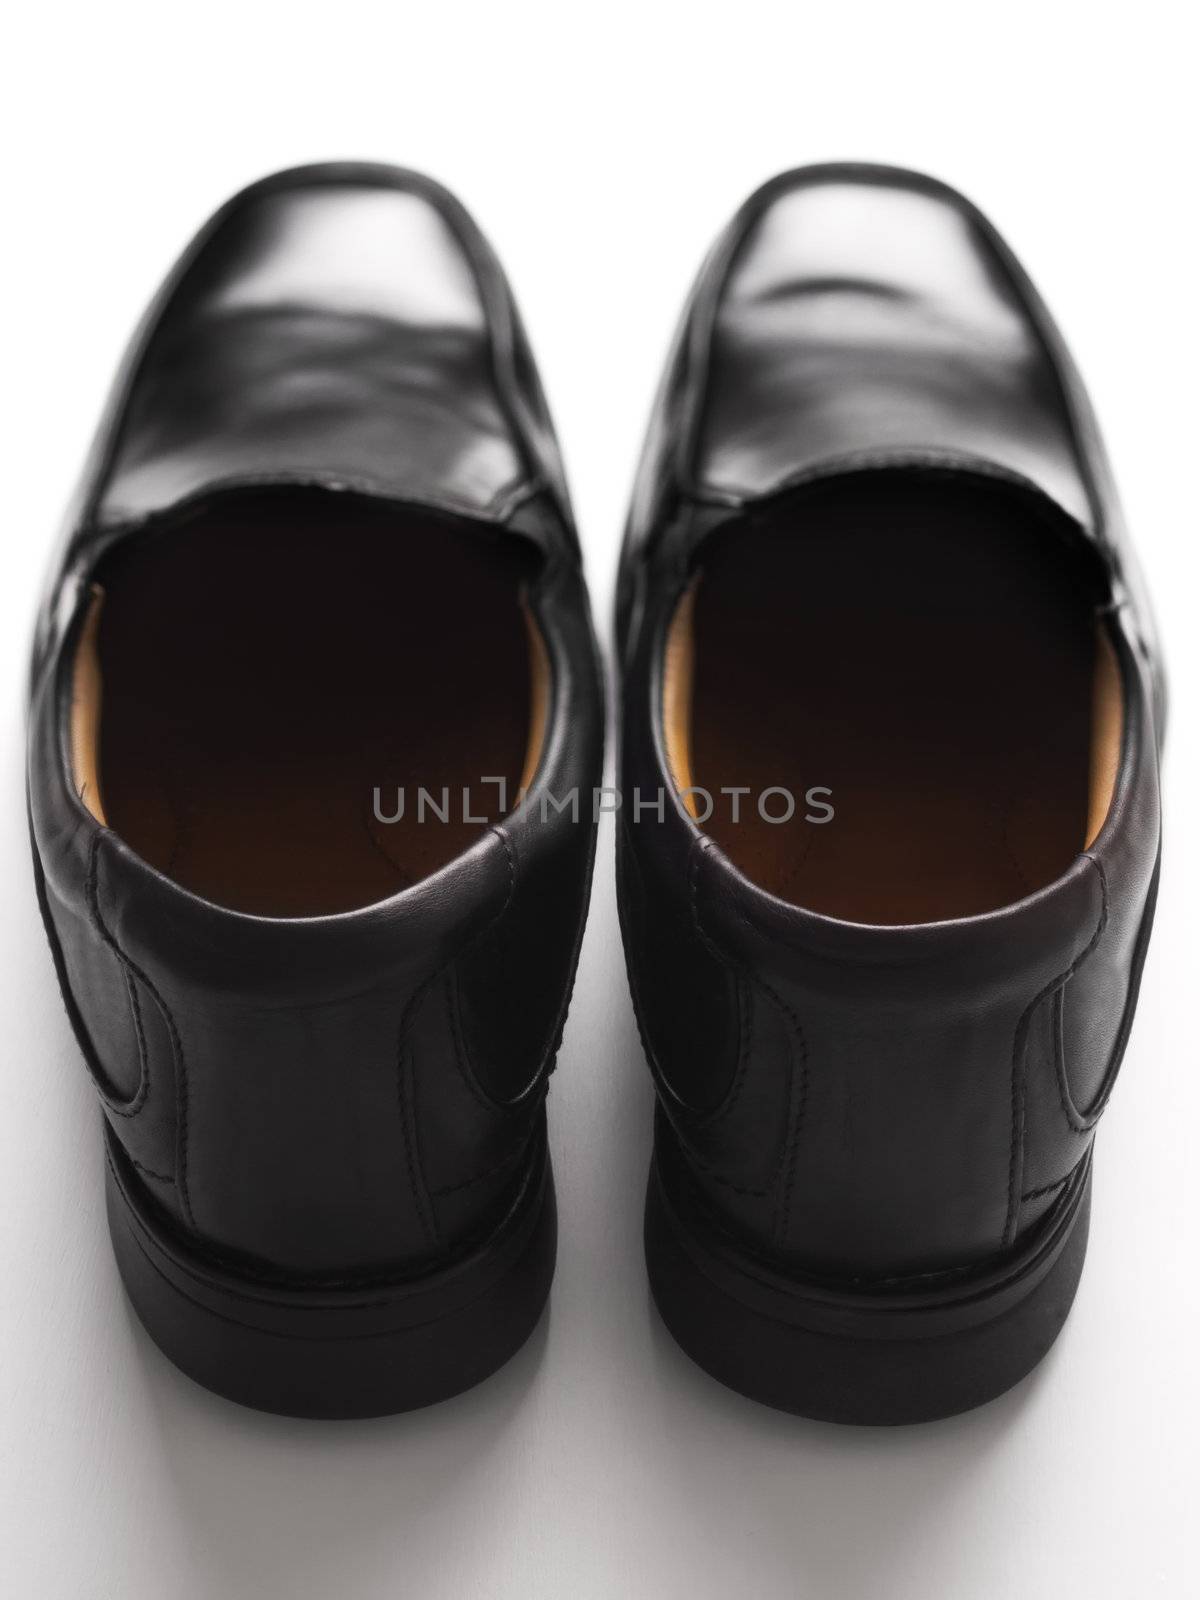 men's black business shoes by zkruger